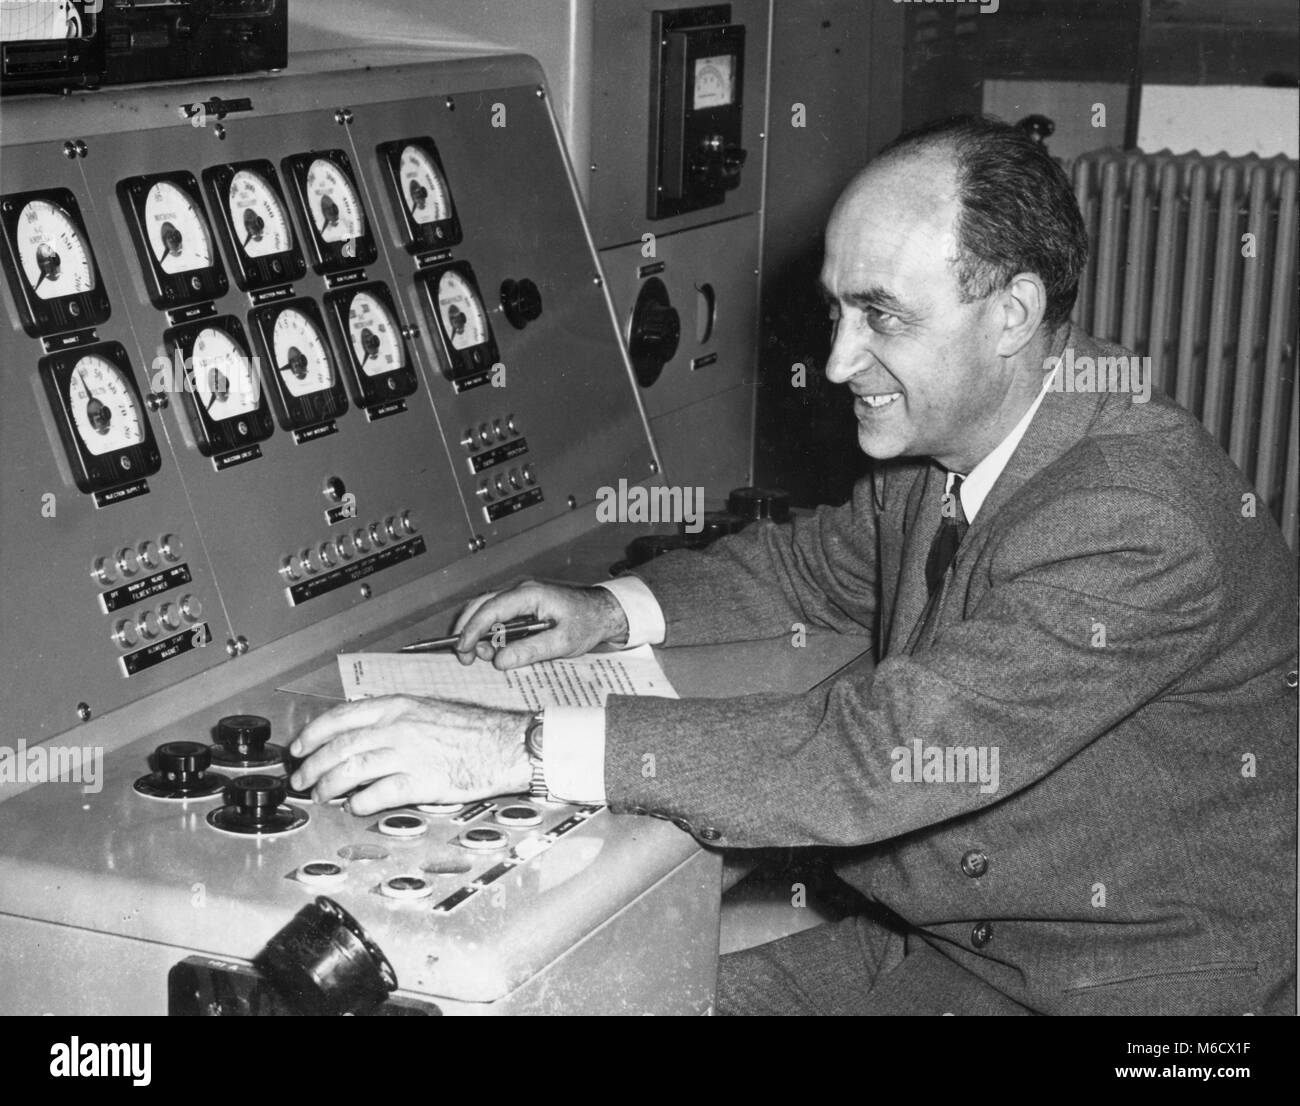 Enrico Fermi mans die Bedienelemente wie atom smasher der Universität von Chicago ein Probelauf unterzogen wird. Die 100 Millionen Volt betatron ist untergebracht im Beschleuniger Gebäude der Universität auf der anderen Straßenseite von Personal Bereich, wo die erste nukleare Kettenreaktion erreicht wurde. Chicago, IL, 5/50. Stockfoto